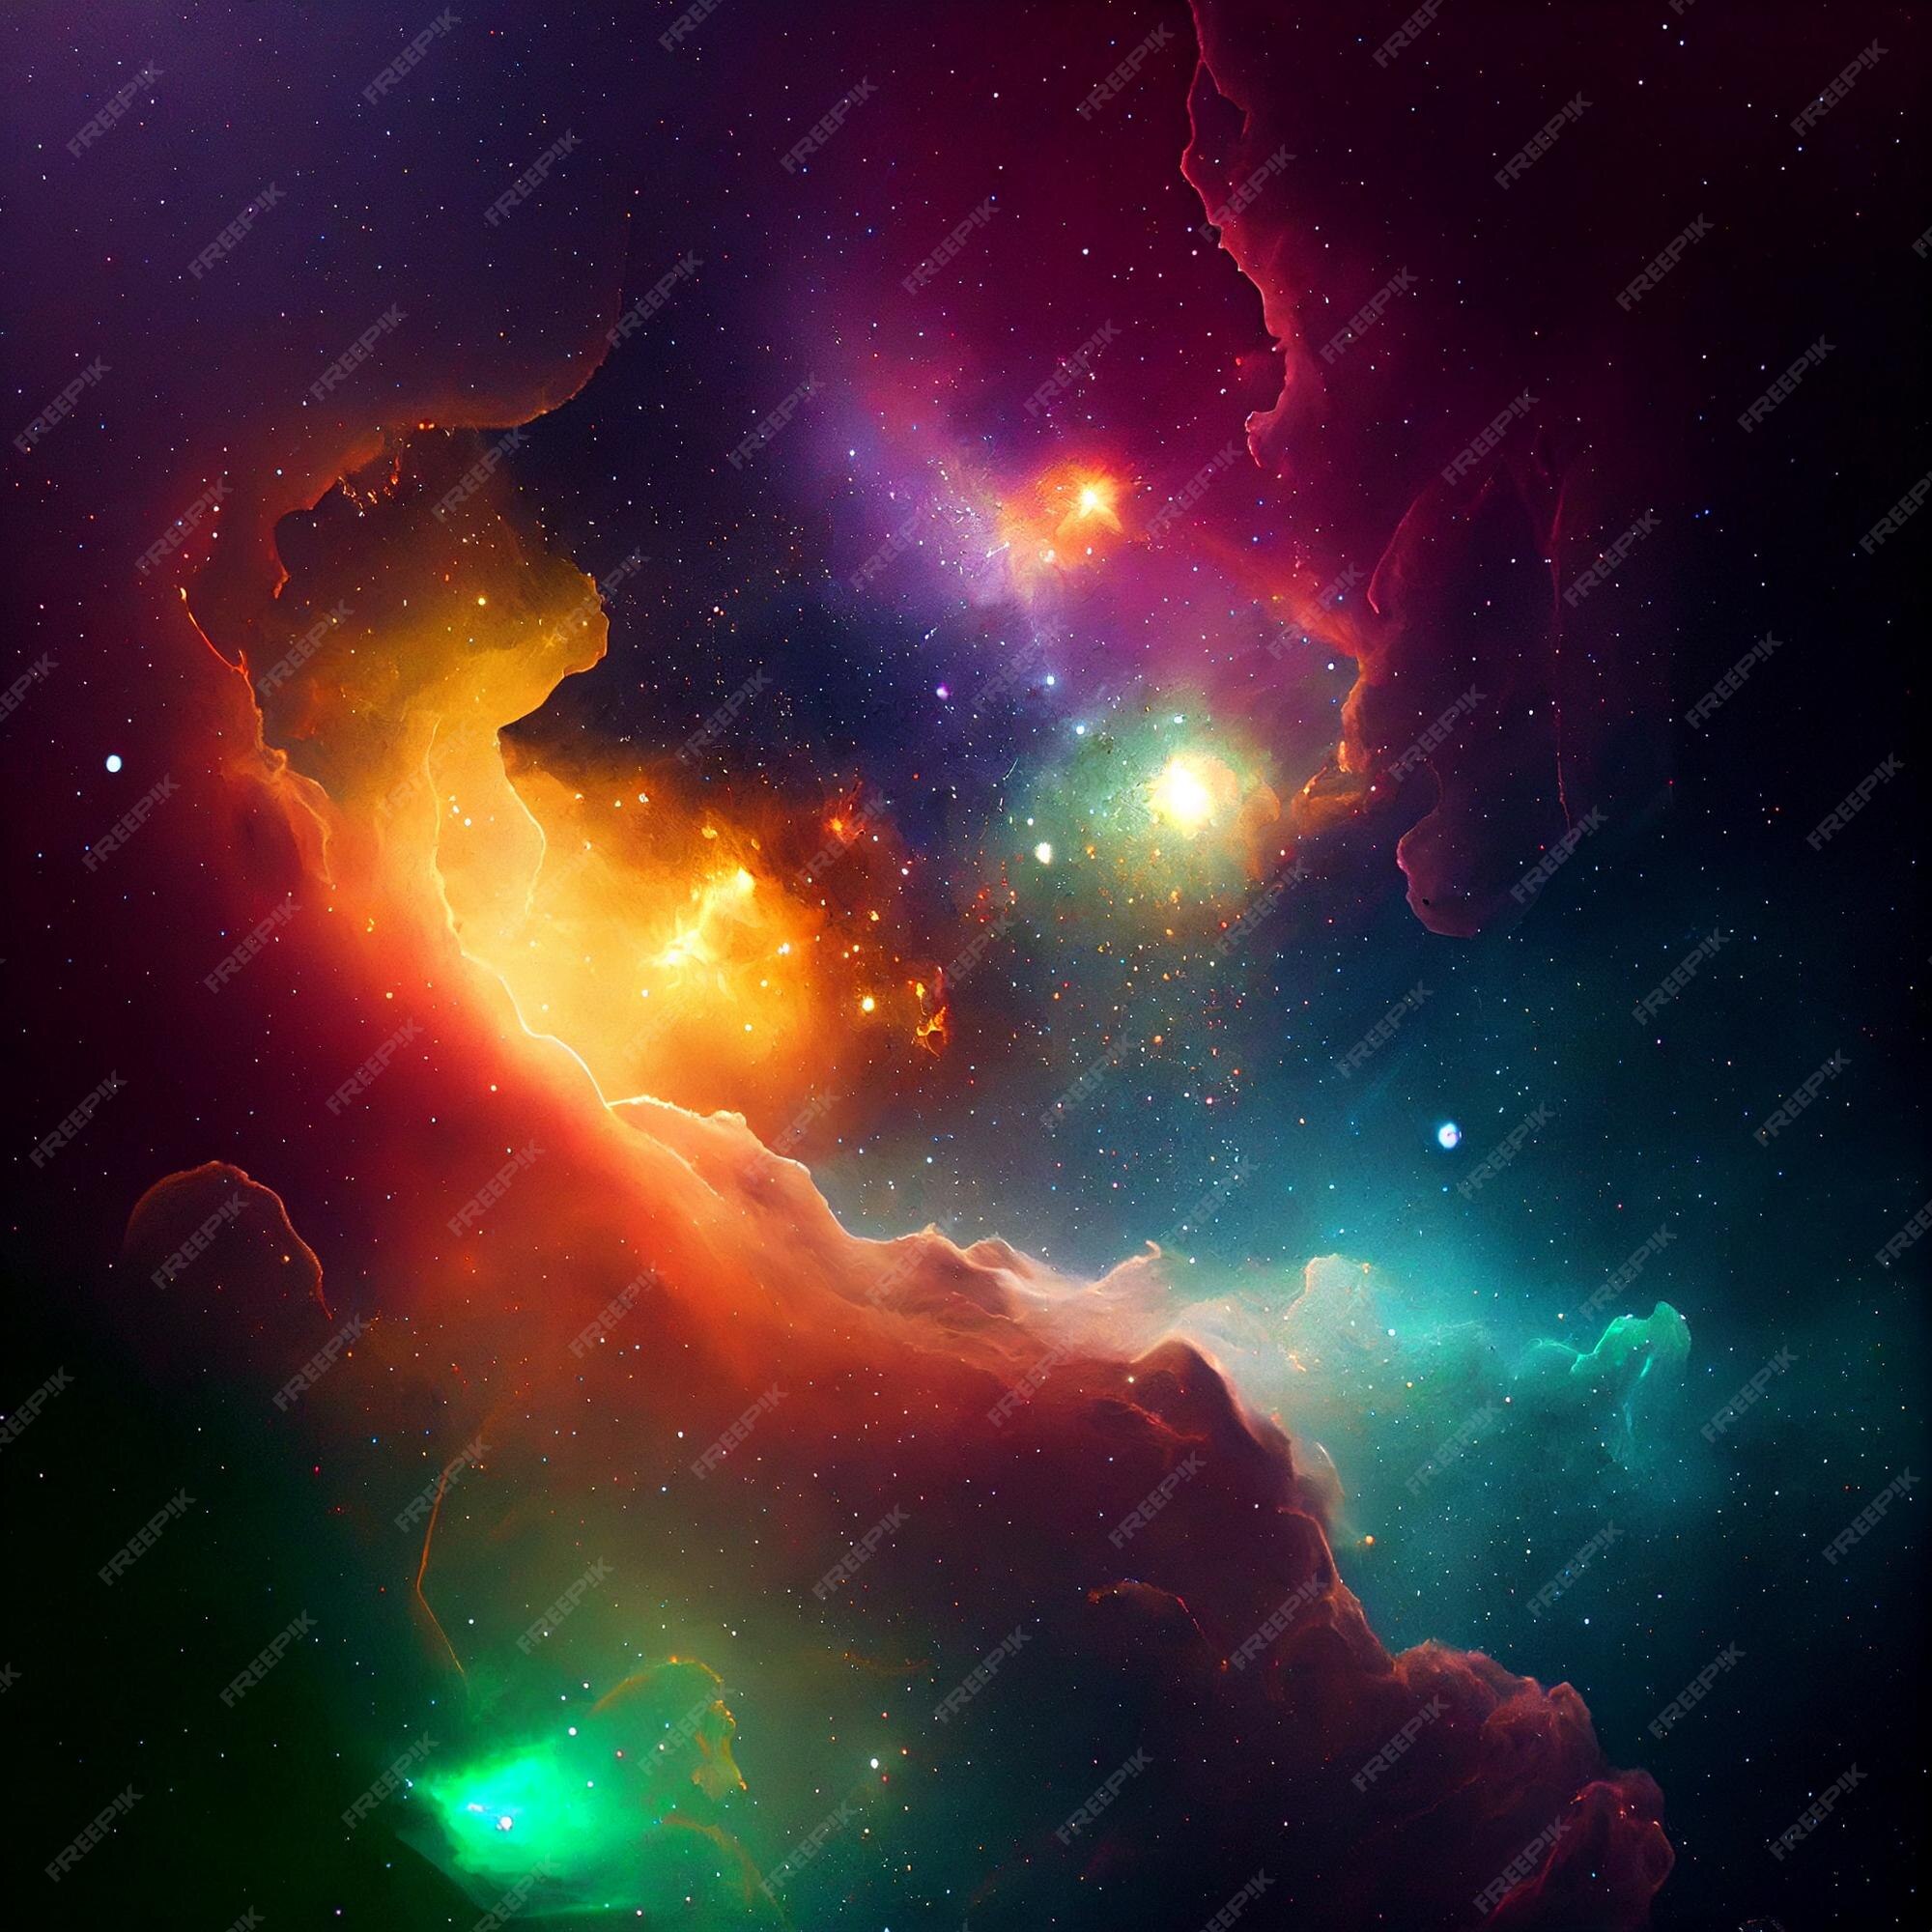 Muốn tìm một hình ảnh trừu tượng của vô tận vũ trụ? Hãy xem qua ảnh hình nền nhàm chán của chúng tôi với những đám mây khói bao phủ và những vệ tinh với sắc màu tuyệt đẹp. Bạn sẽ cảm thấy như đang được di chuyển trong một vũ trụ chưa khám phá.